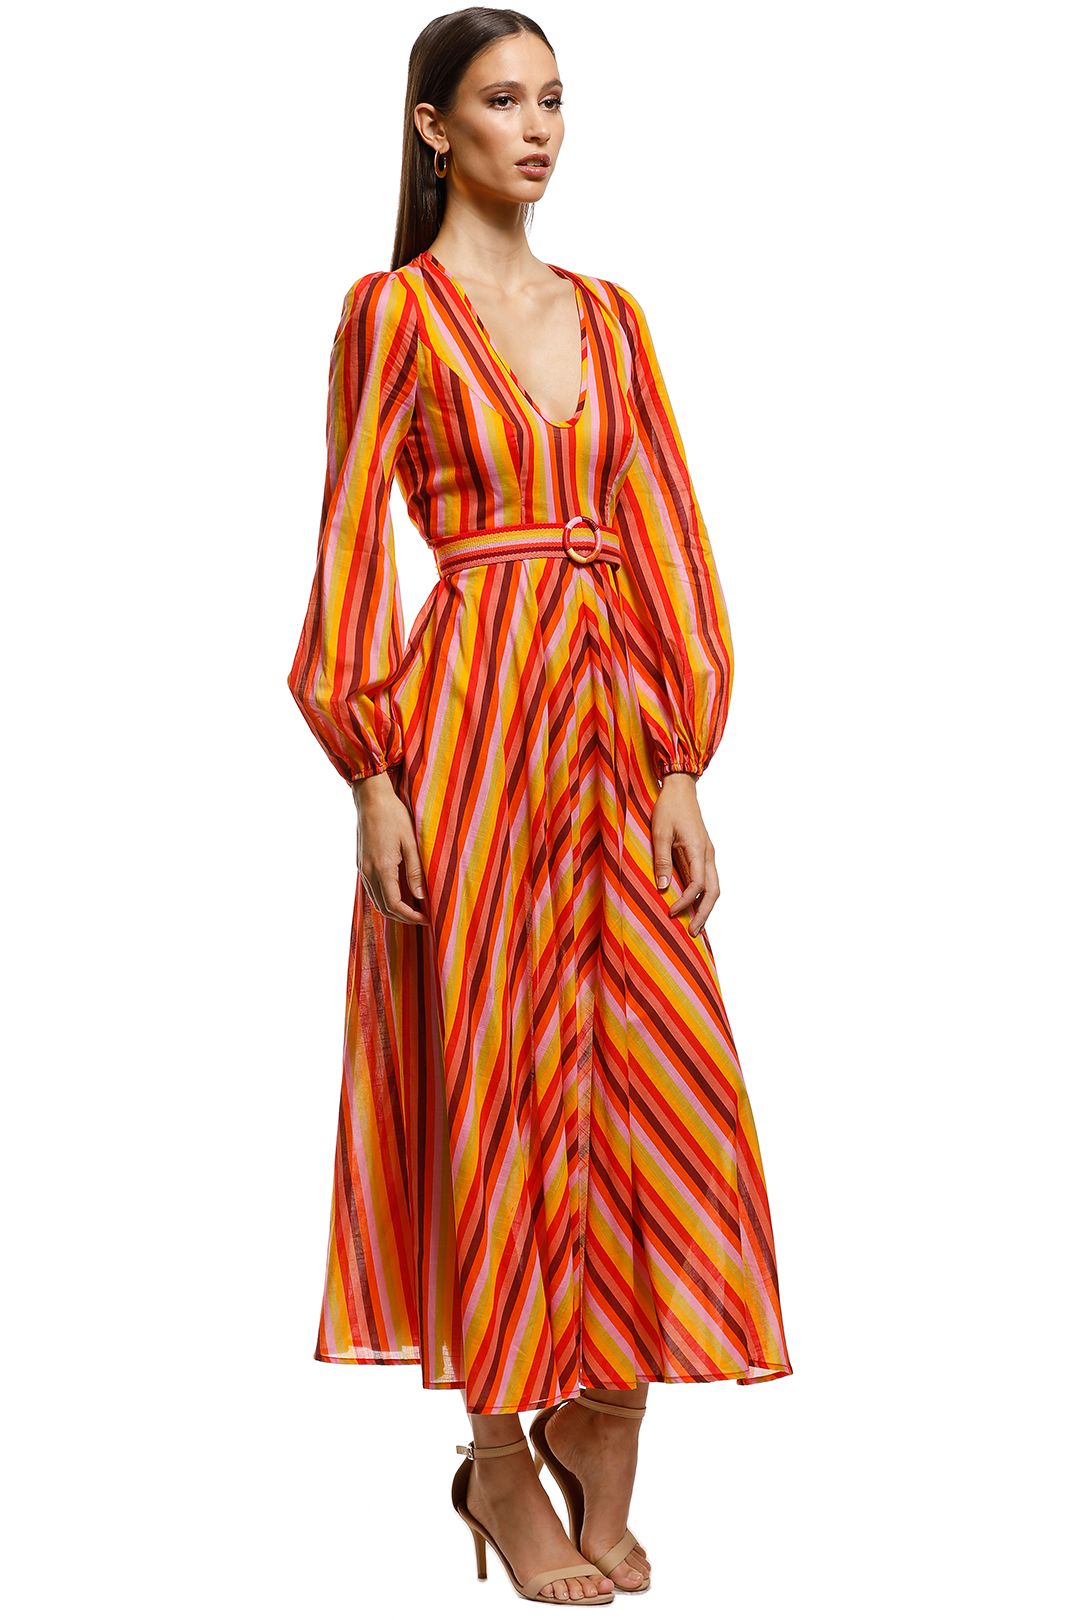 Zimmermann - Goldie Plunge Dress - Orange - Side